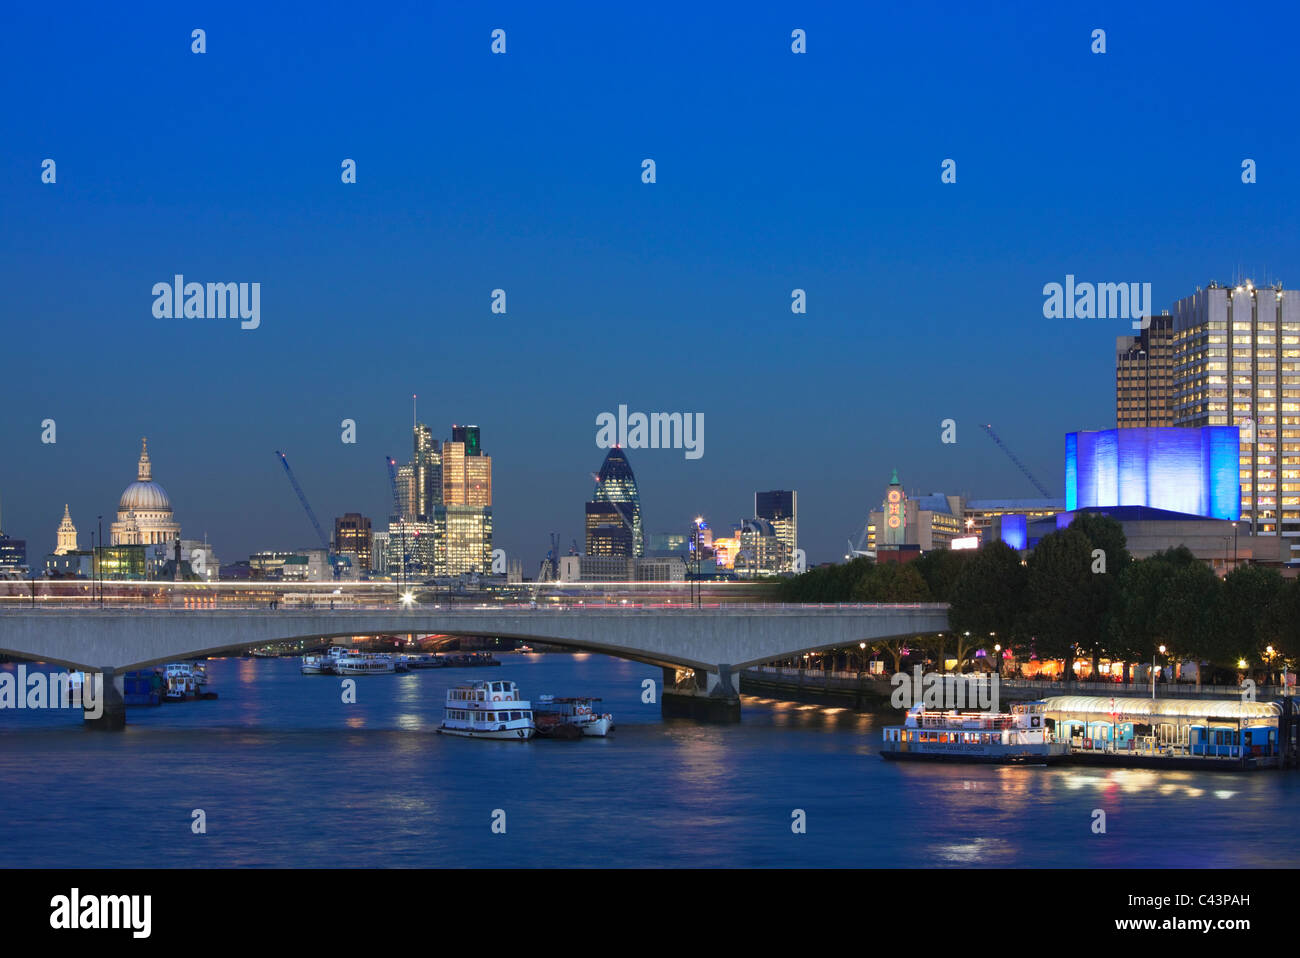 Les toits de la ville, la Thames, London bridge at night ; Londres ; l'Angleterre Banque D'Images